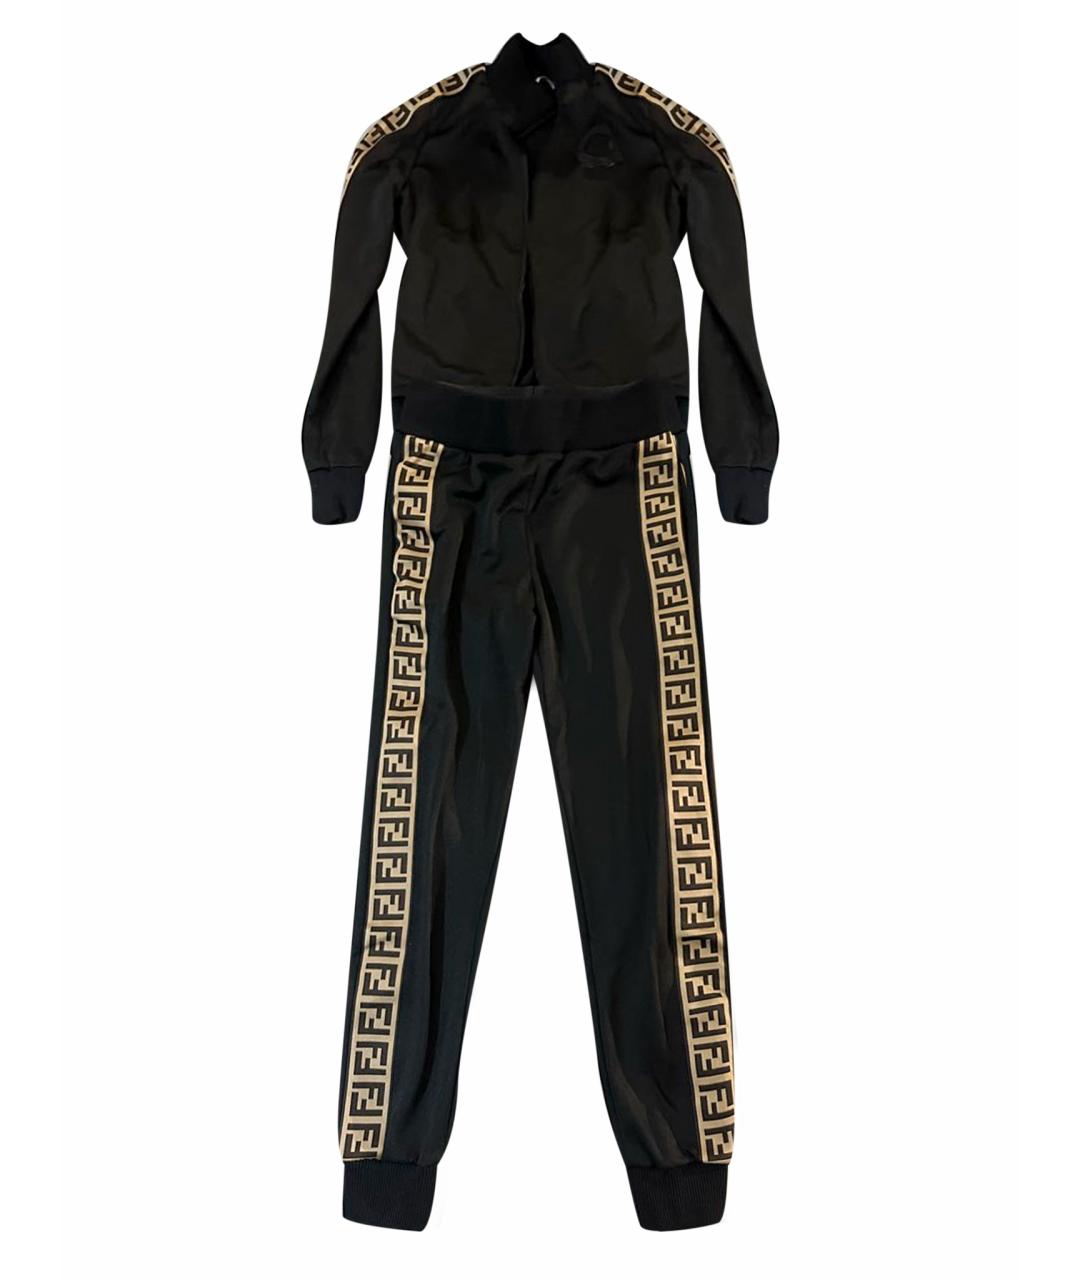 Спортивные костюмы FENDI для женщин купить за 38000 руб, арт. 1818628 –  Интернет-магазин Oskelly